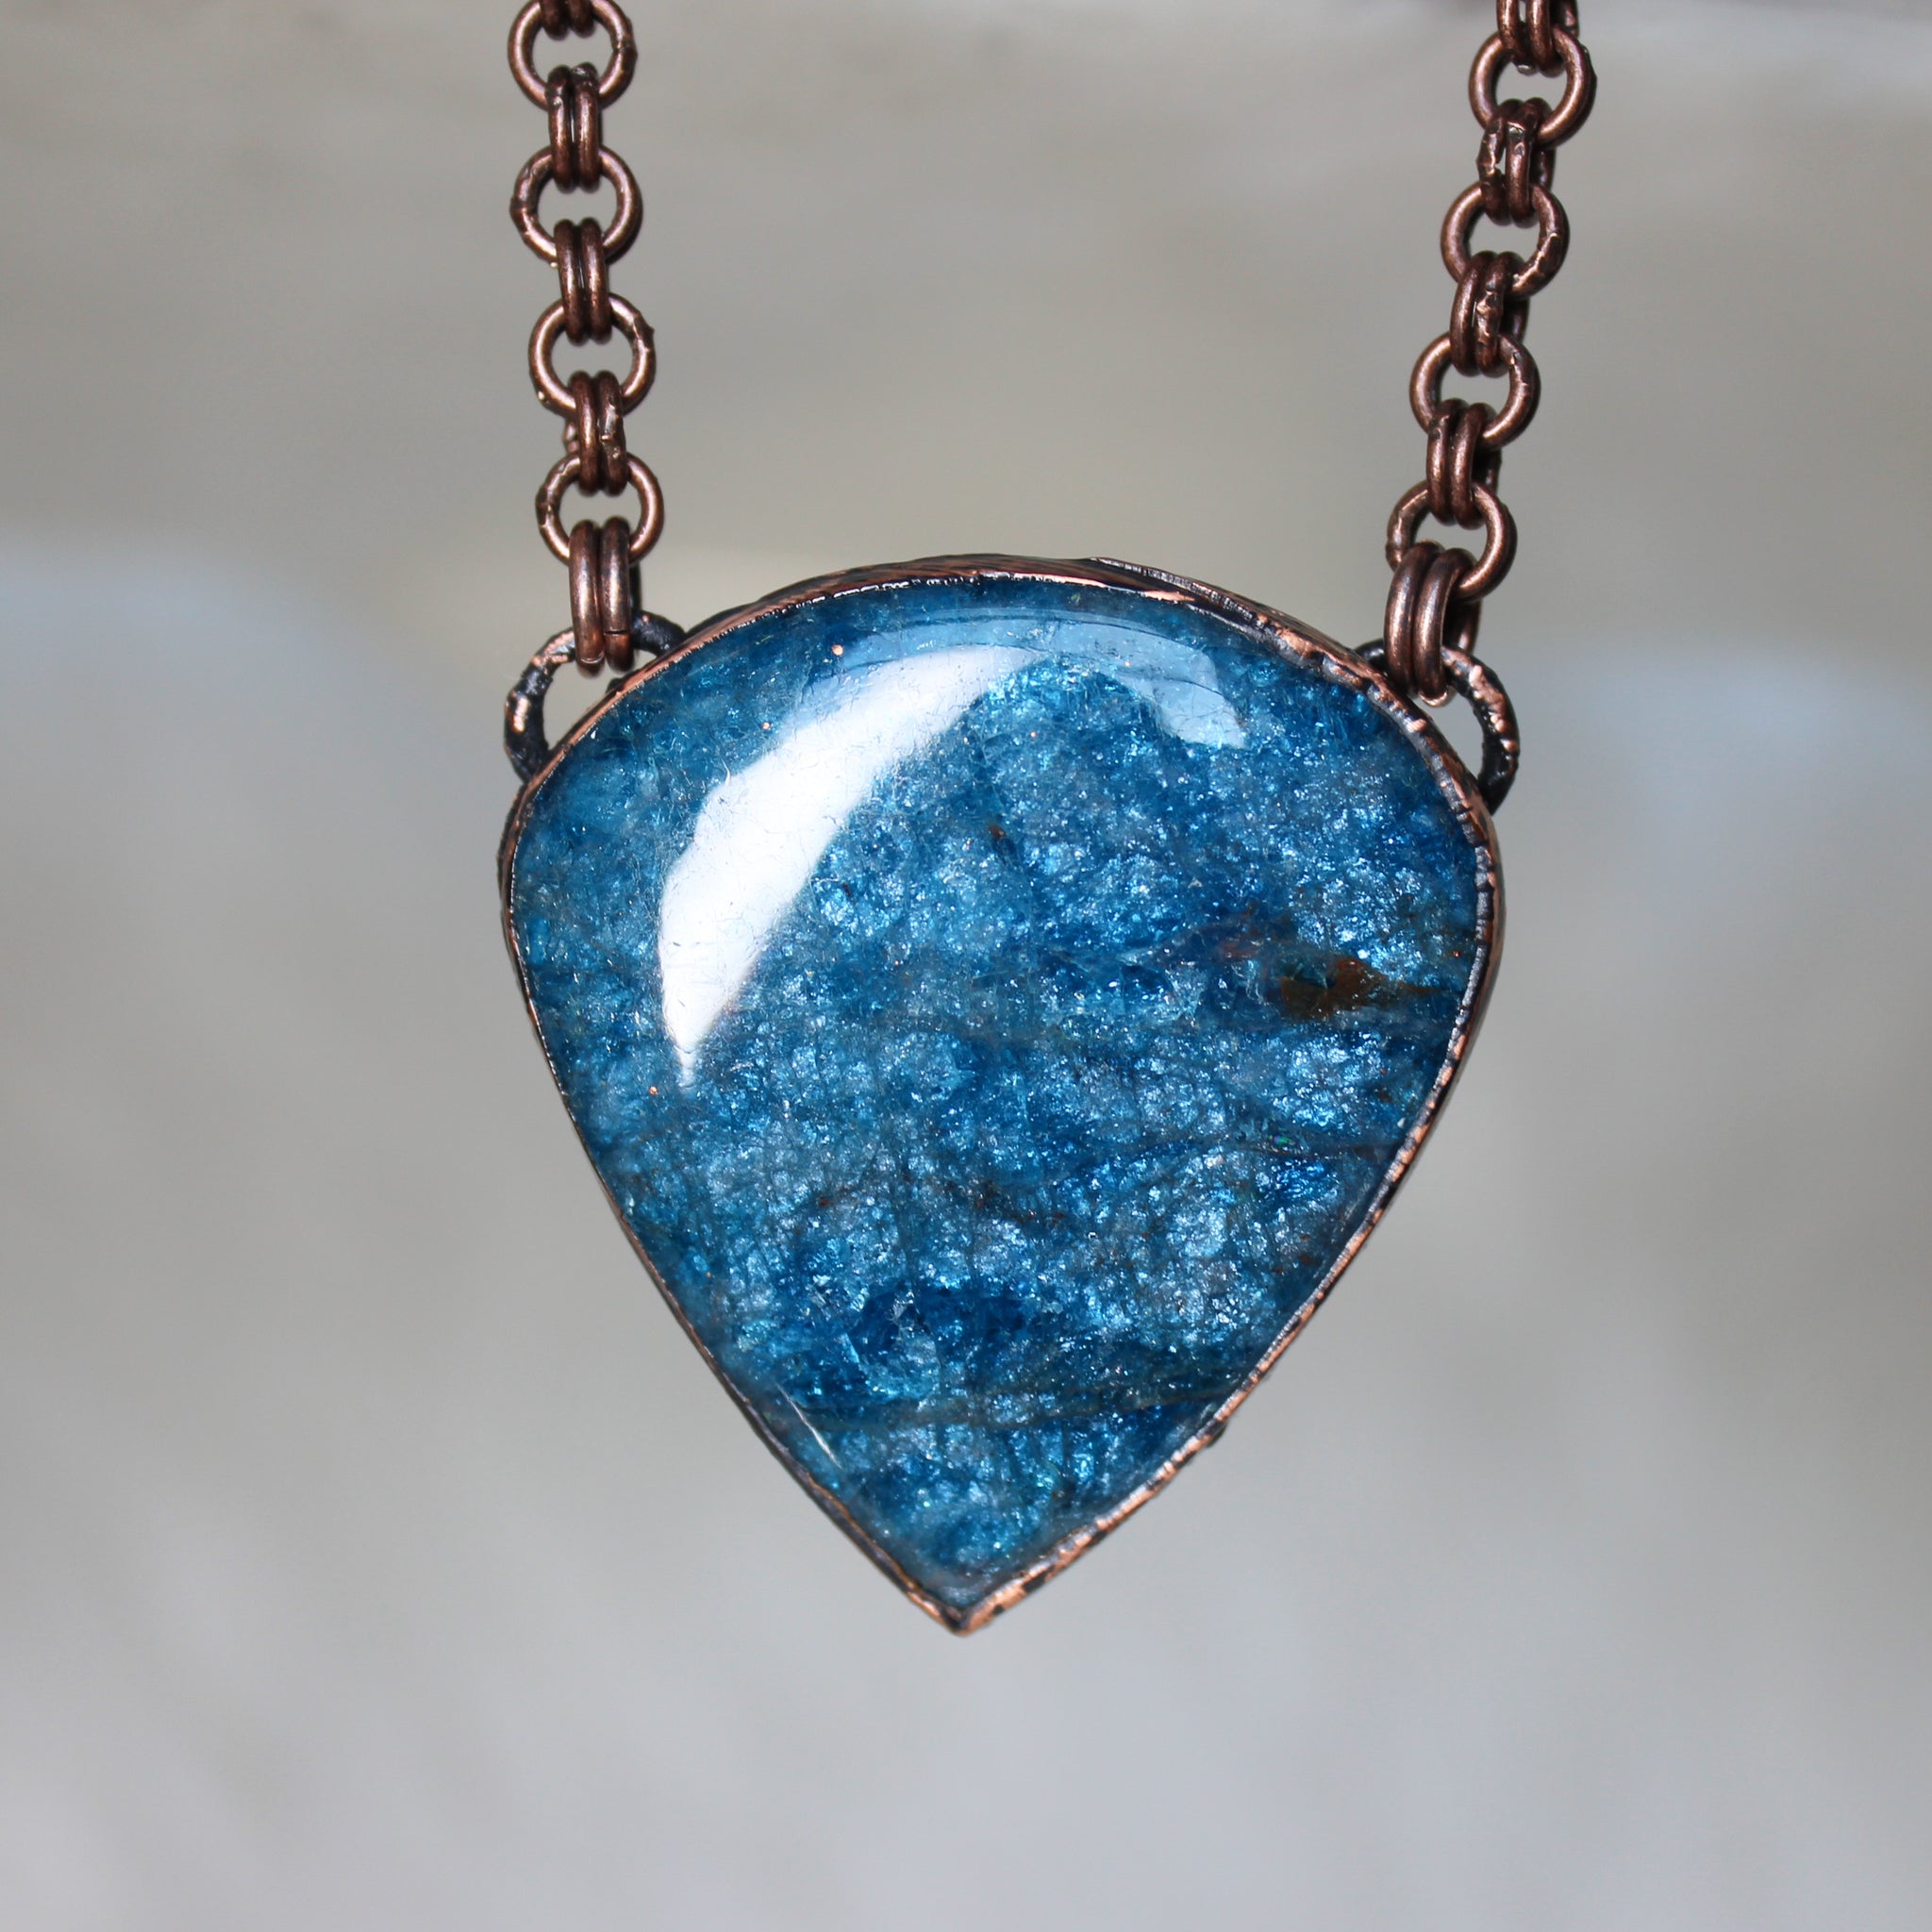 Blue Apatite necklace